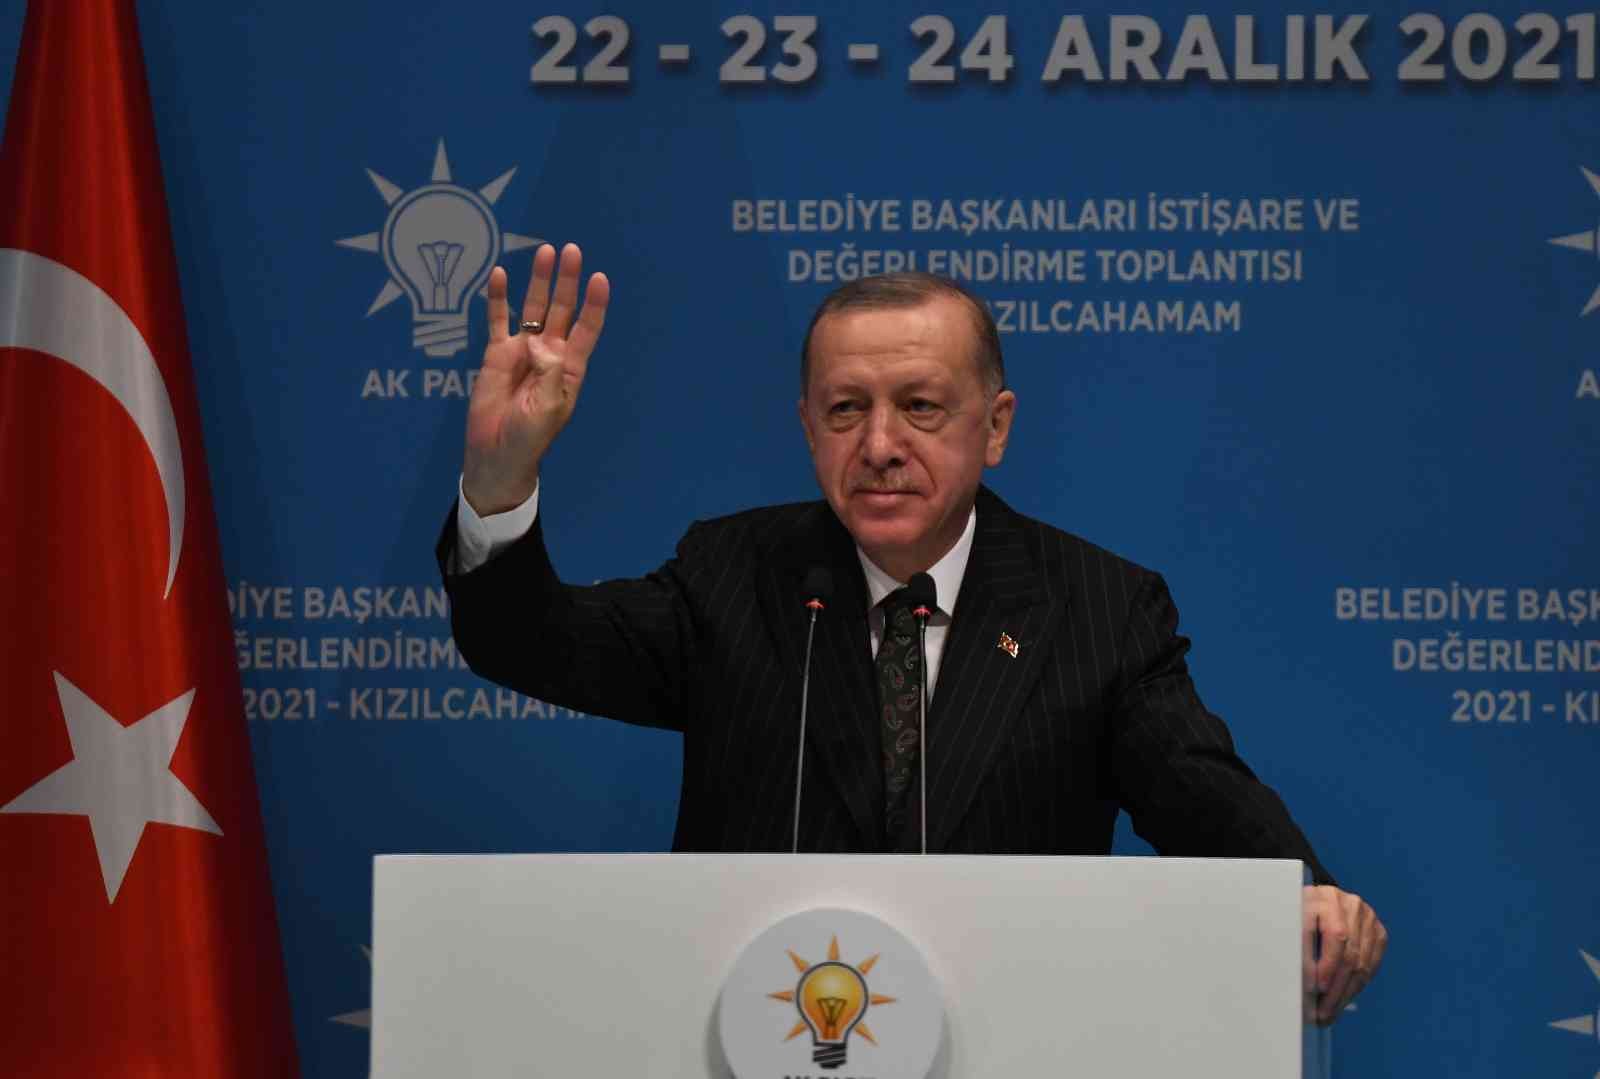 Cumhurbaşkanı Erdoğan, belediye başkanlarına hitap etti: “Tüm çalışmalarınızı 2023 seçimlerine göre ayarlamanız gerek”